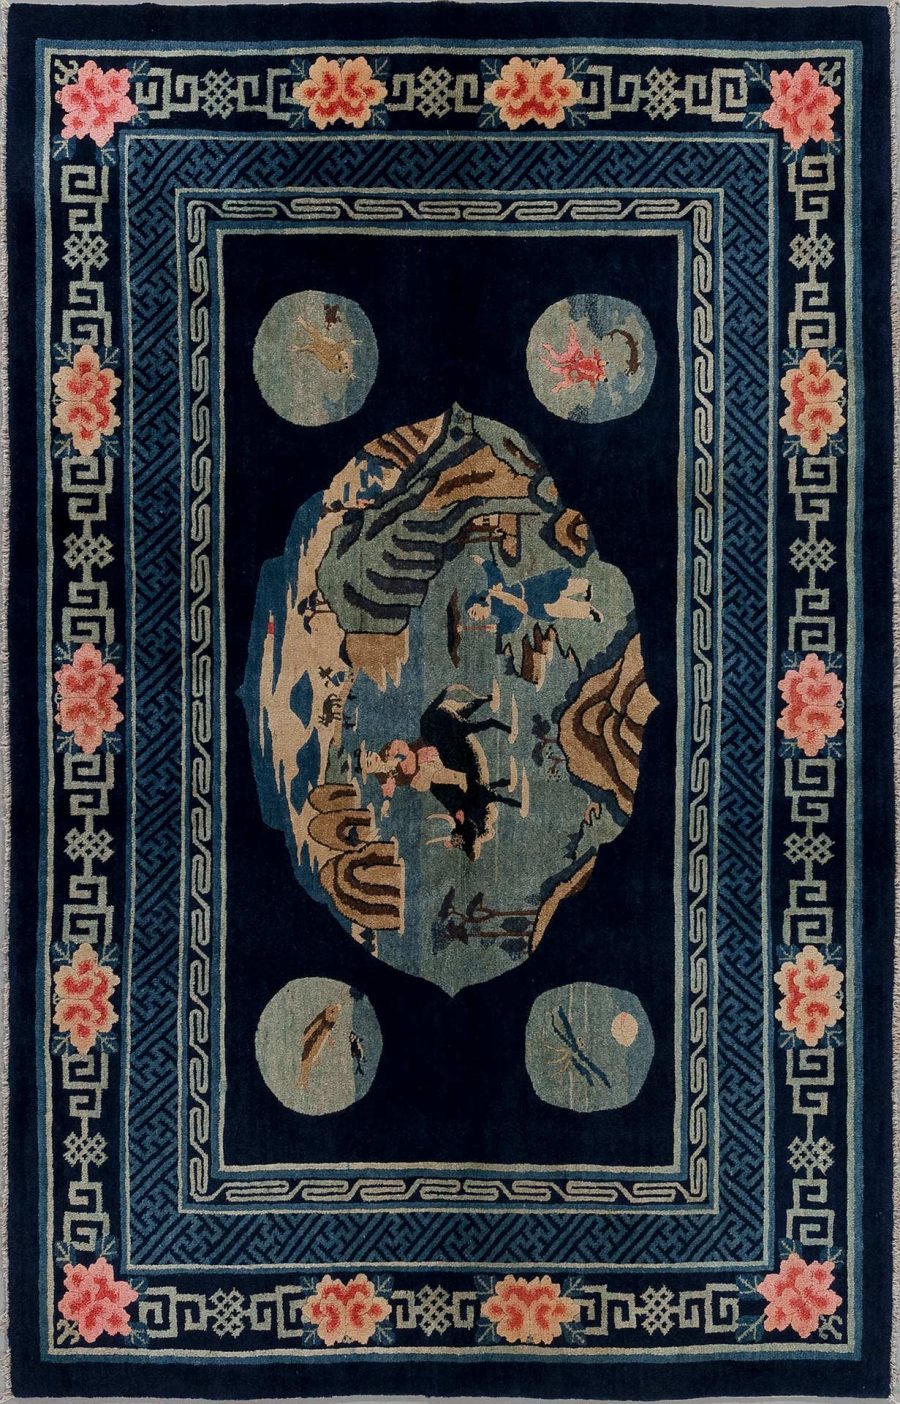 Antiker Teppich mit zentral ovaler Medaillonabbildung eines asiatisch inspirierten Berg- und Flusslandschaftsmotivs, umgeben von hellblauen und beige Ringformen auf dunkelblauem Grund mit blütenbesetzten Ecklösungen und griechischem Schlüsselband als Bordürendekor.